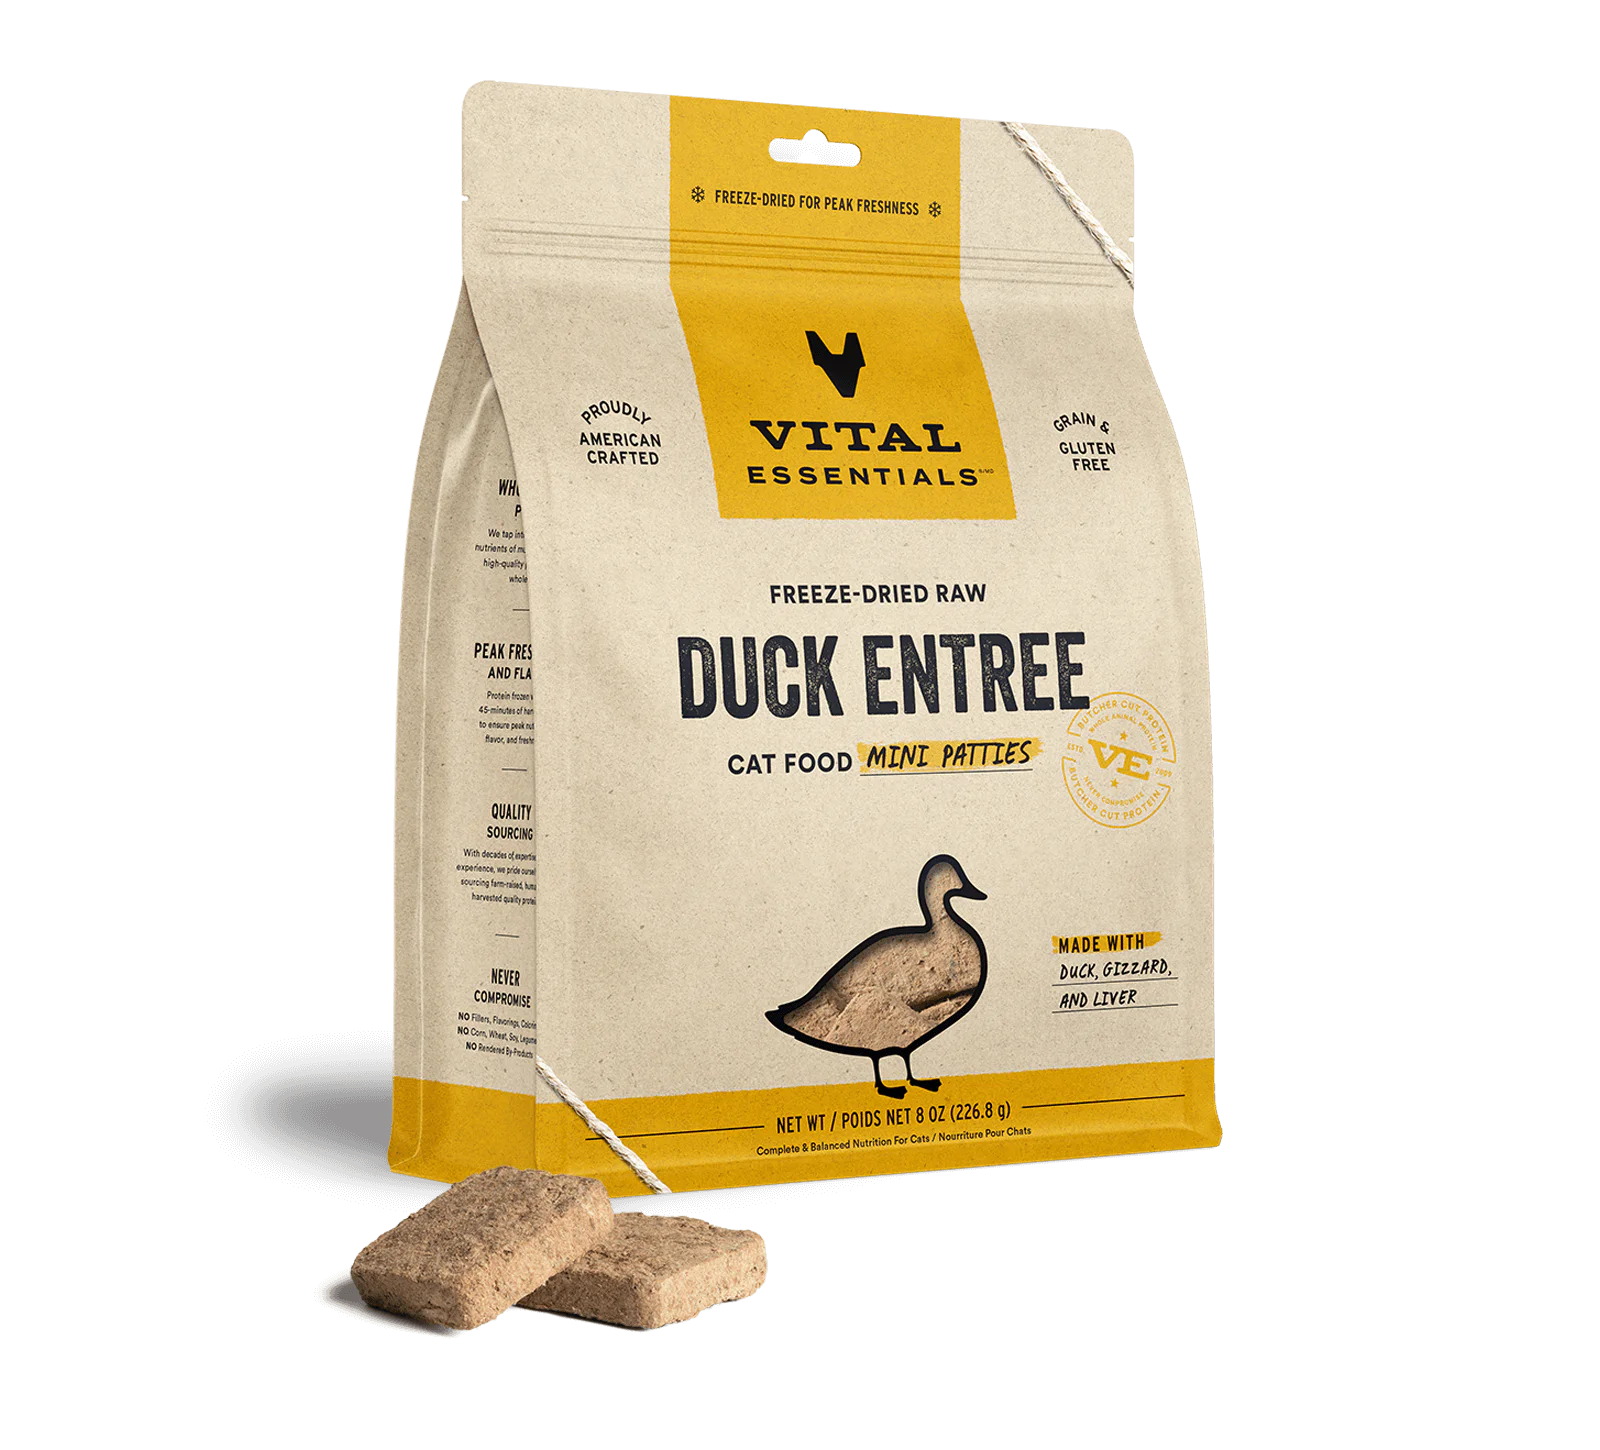 Vital Essentials (VE) - Mini Patties - Duck Recipe (Cat Food)